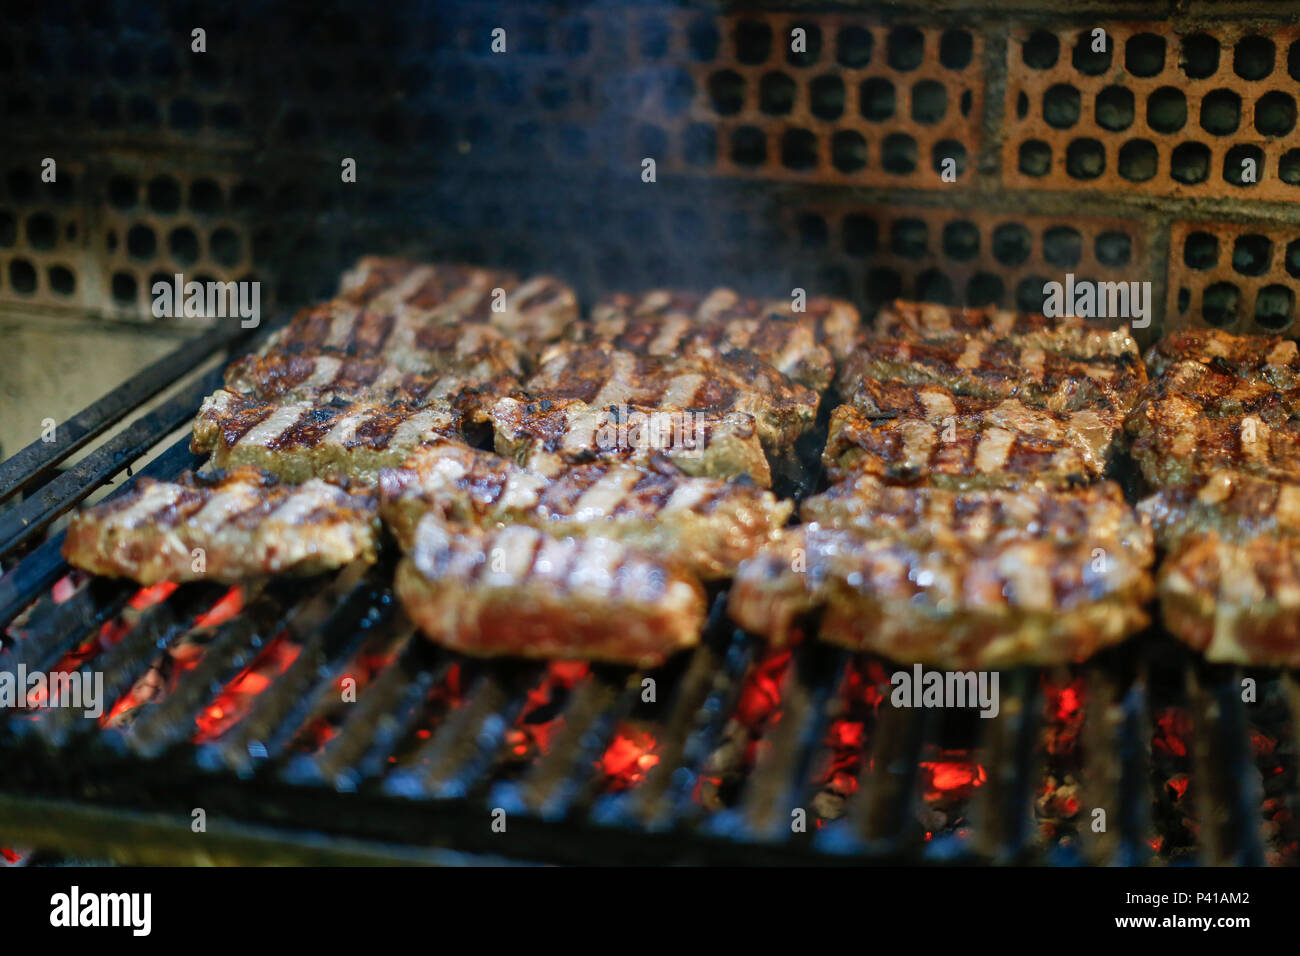 Churrasco de contra-filé em grelha argentina. Churrasqueira, churrasco agentino, carne de boi. 07/12/2017 Stock Photo